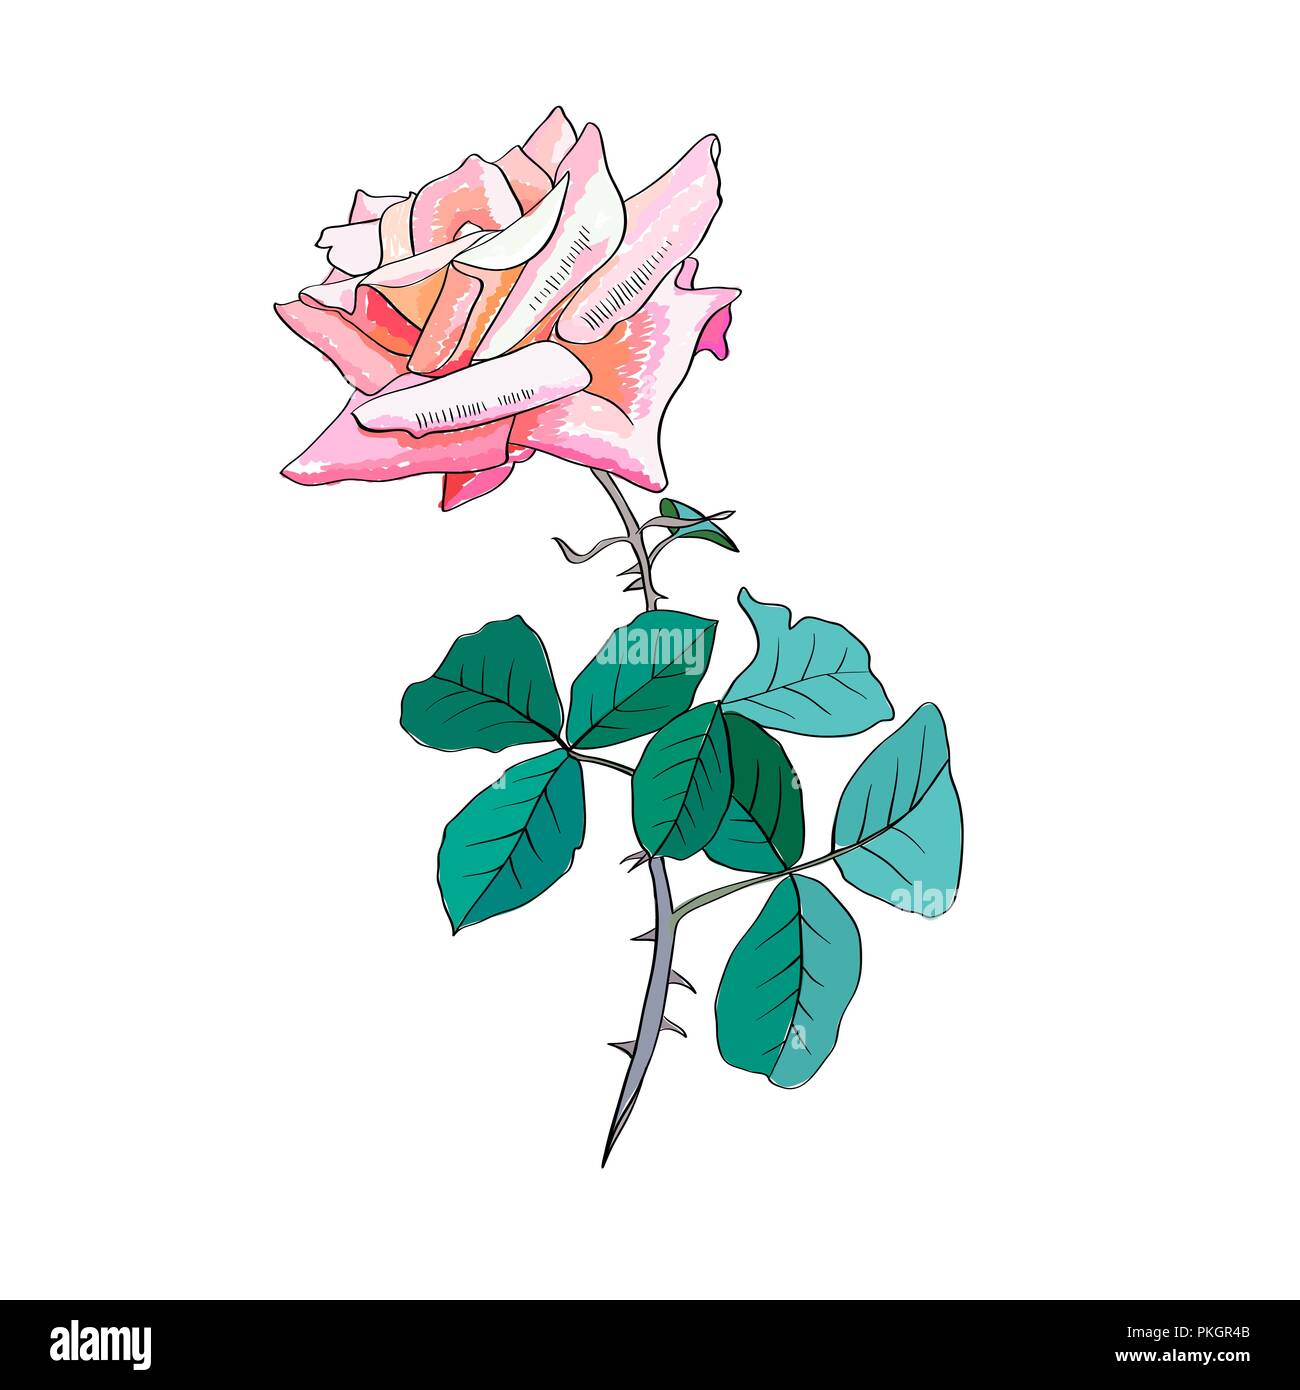 Rosa Rose watercolor Illustration. Liebe dich soo viel Kalligraphie. Rosa Rose mit Dornen und Blätter. Garten Blume. Valentines Tag. Grußkarte, Postkarte, Brief Floral Design. Isolierte Farbe Vektor Stock Vektor